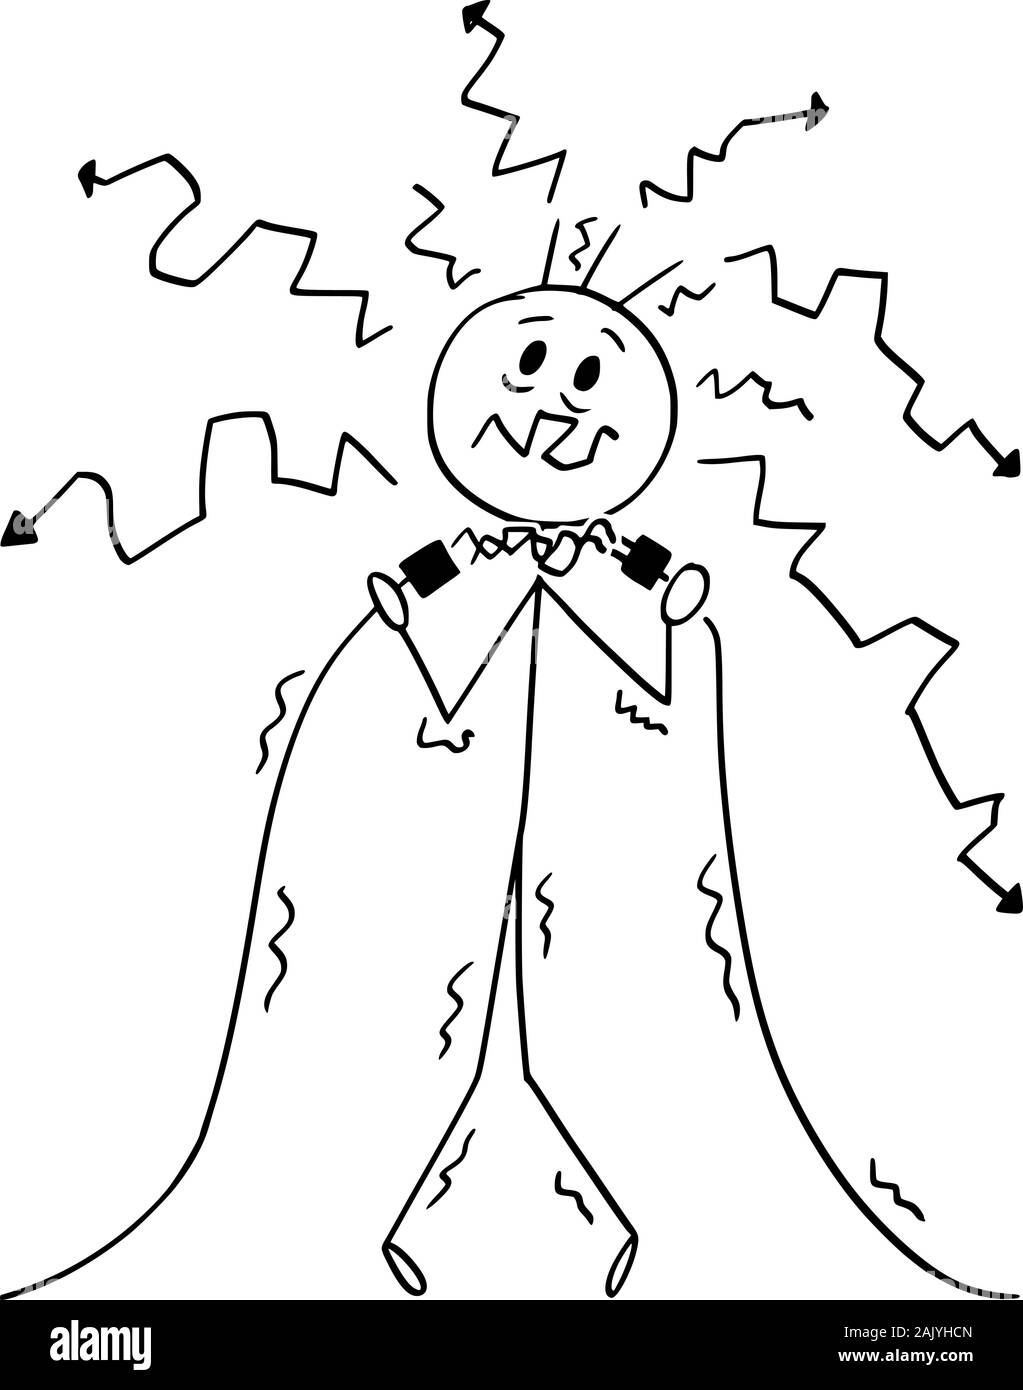 Vector cartoon stick figura disegno illustrazione concettuale dell'uomo elettricista o contenere cavi e ottenere la scossa elettrica. Illustrazione Vettoriale